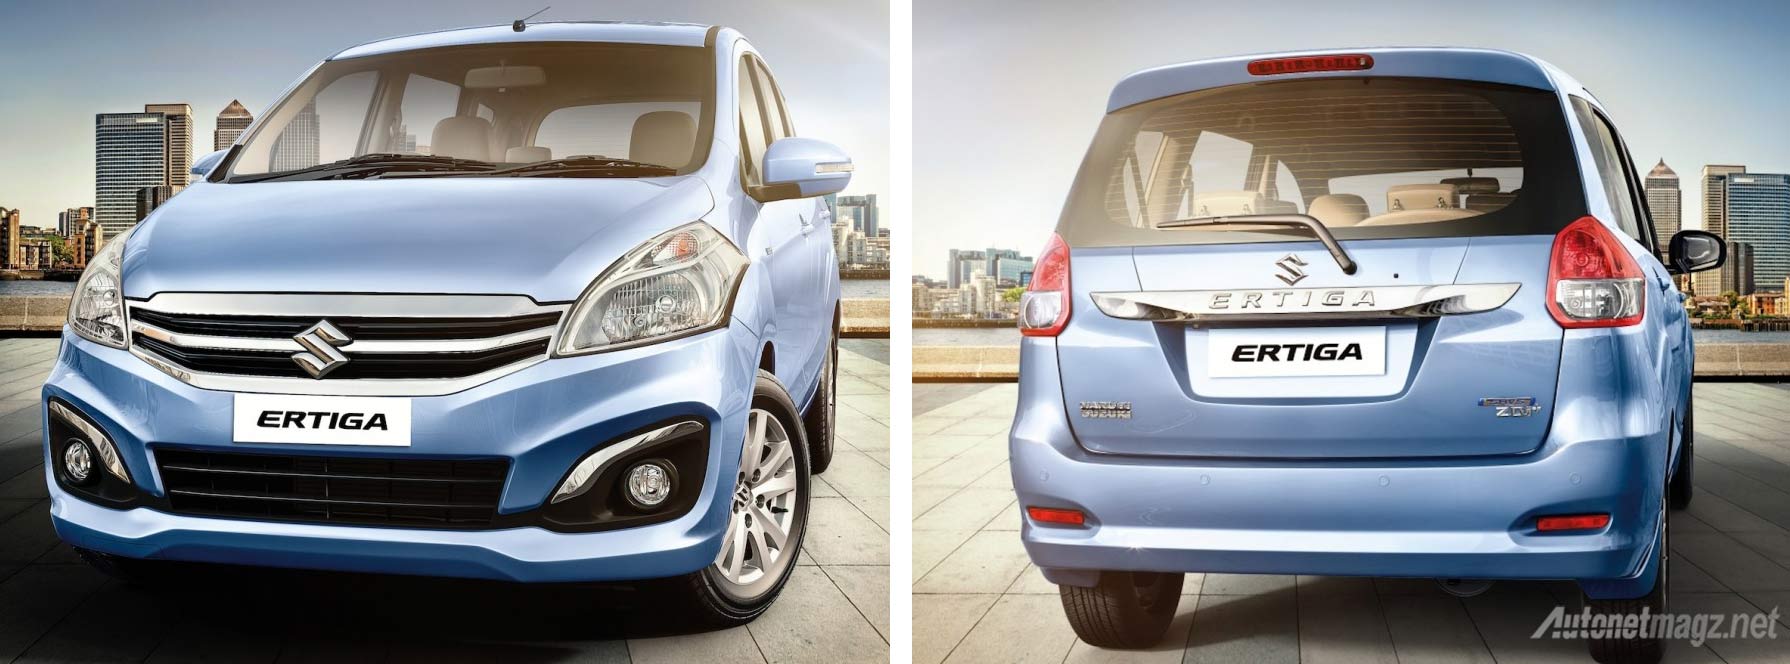 Berita, suzuki-ertiga-india: Ngiler, Suzuki Ertiga Facelift India Punya Fitur Jauh Lebih Lengkap Dibanding Versi Indonesia!